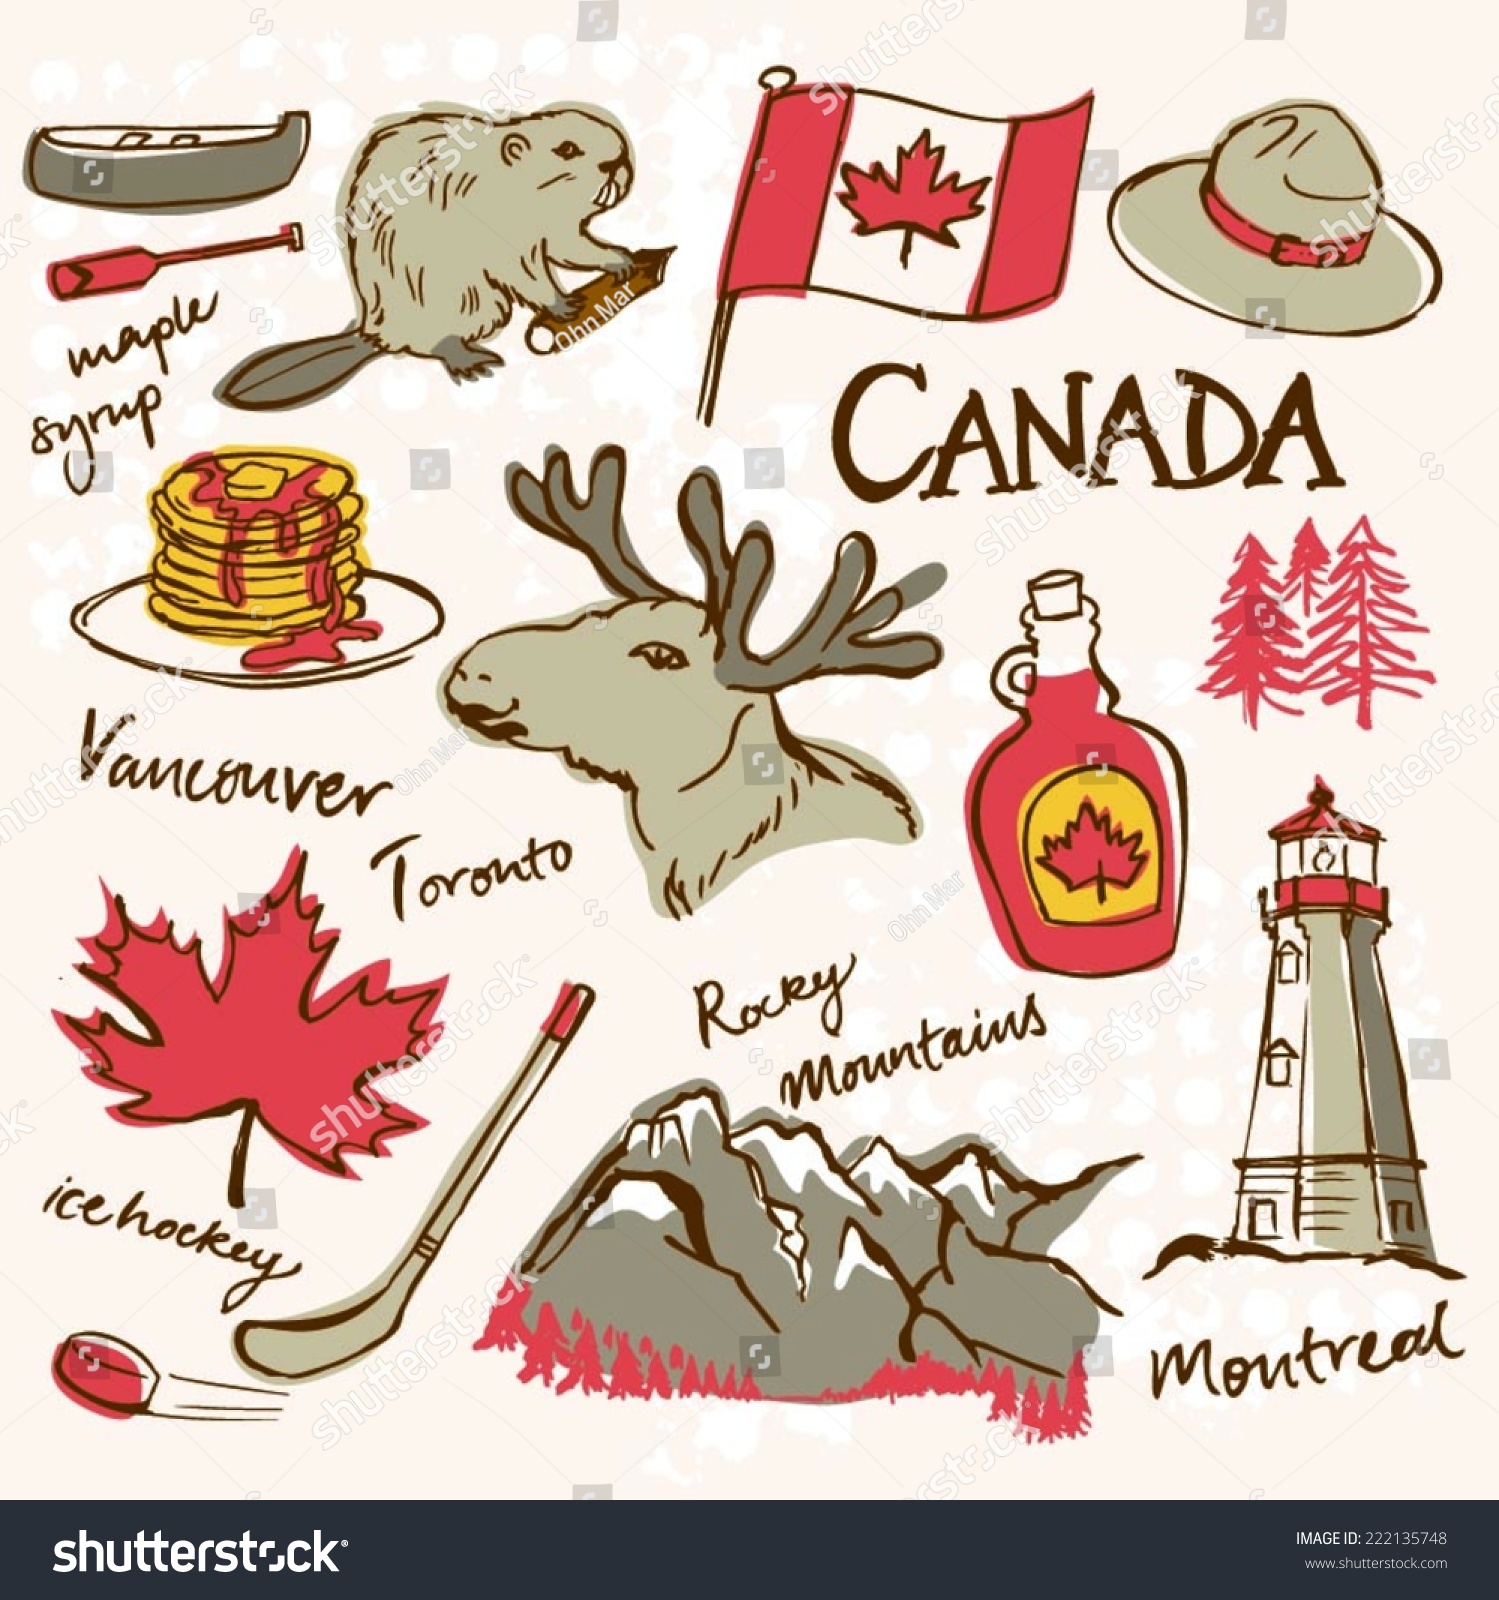 Канада рисунки